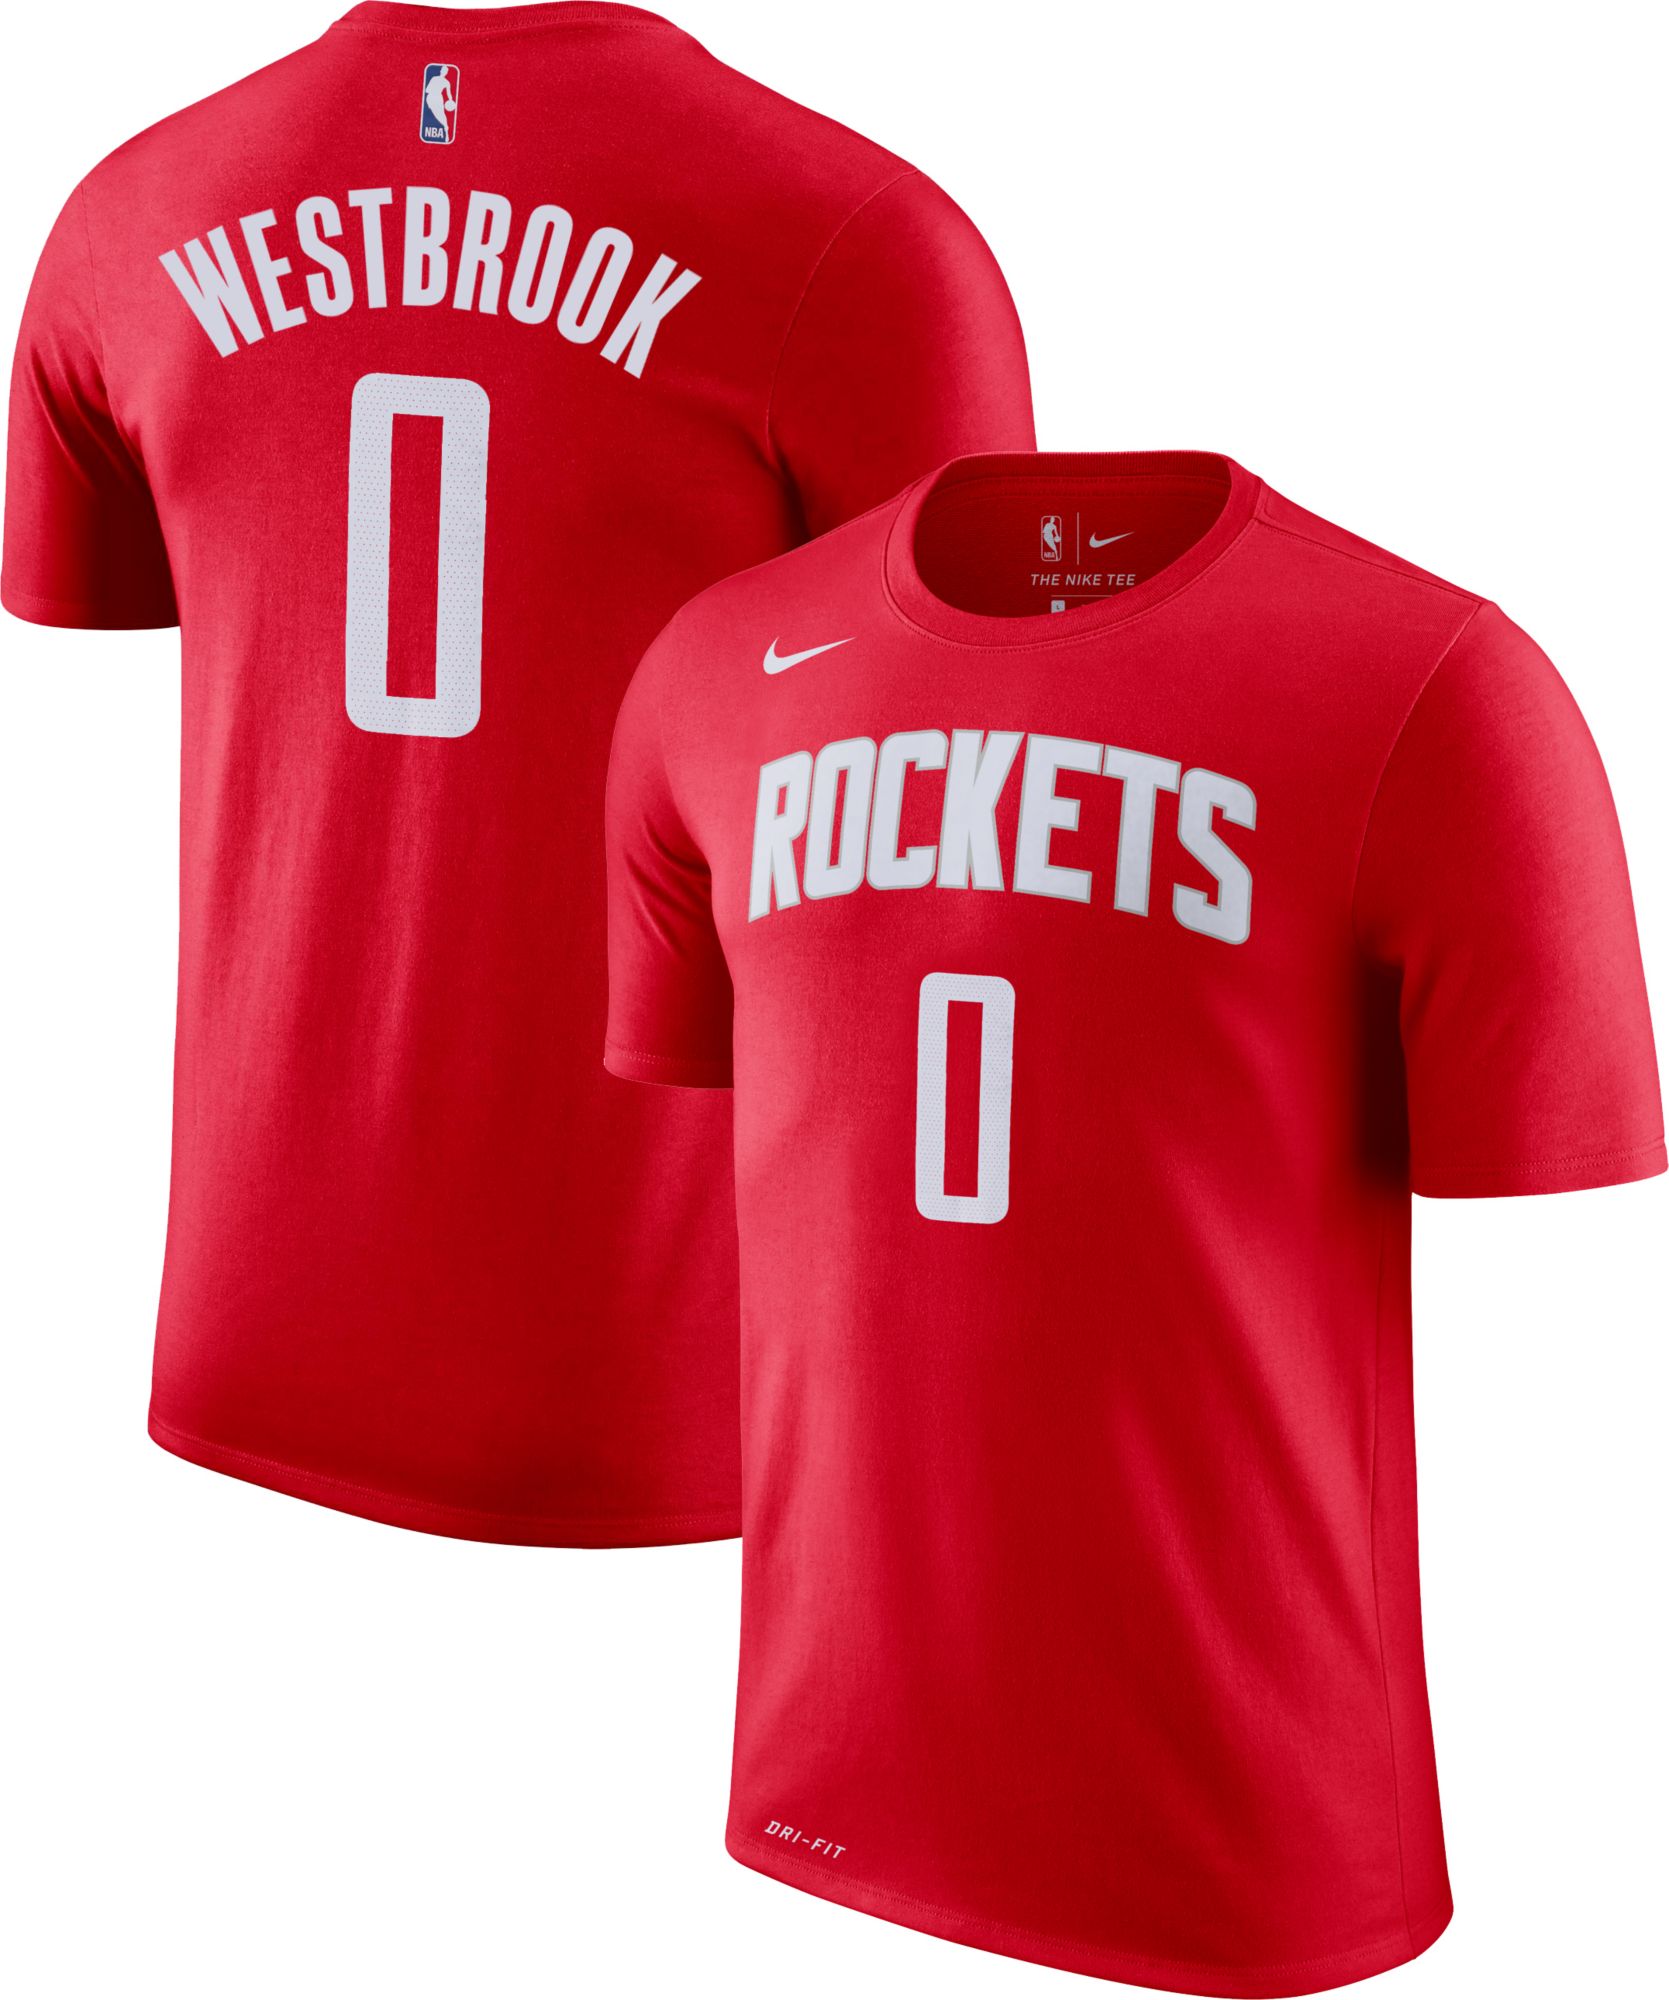 rockets russell westbrook jersey